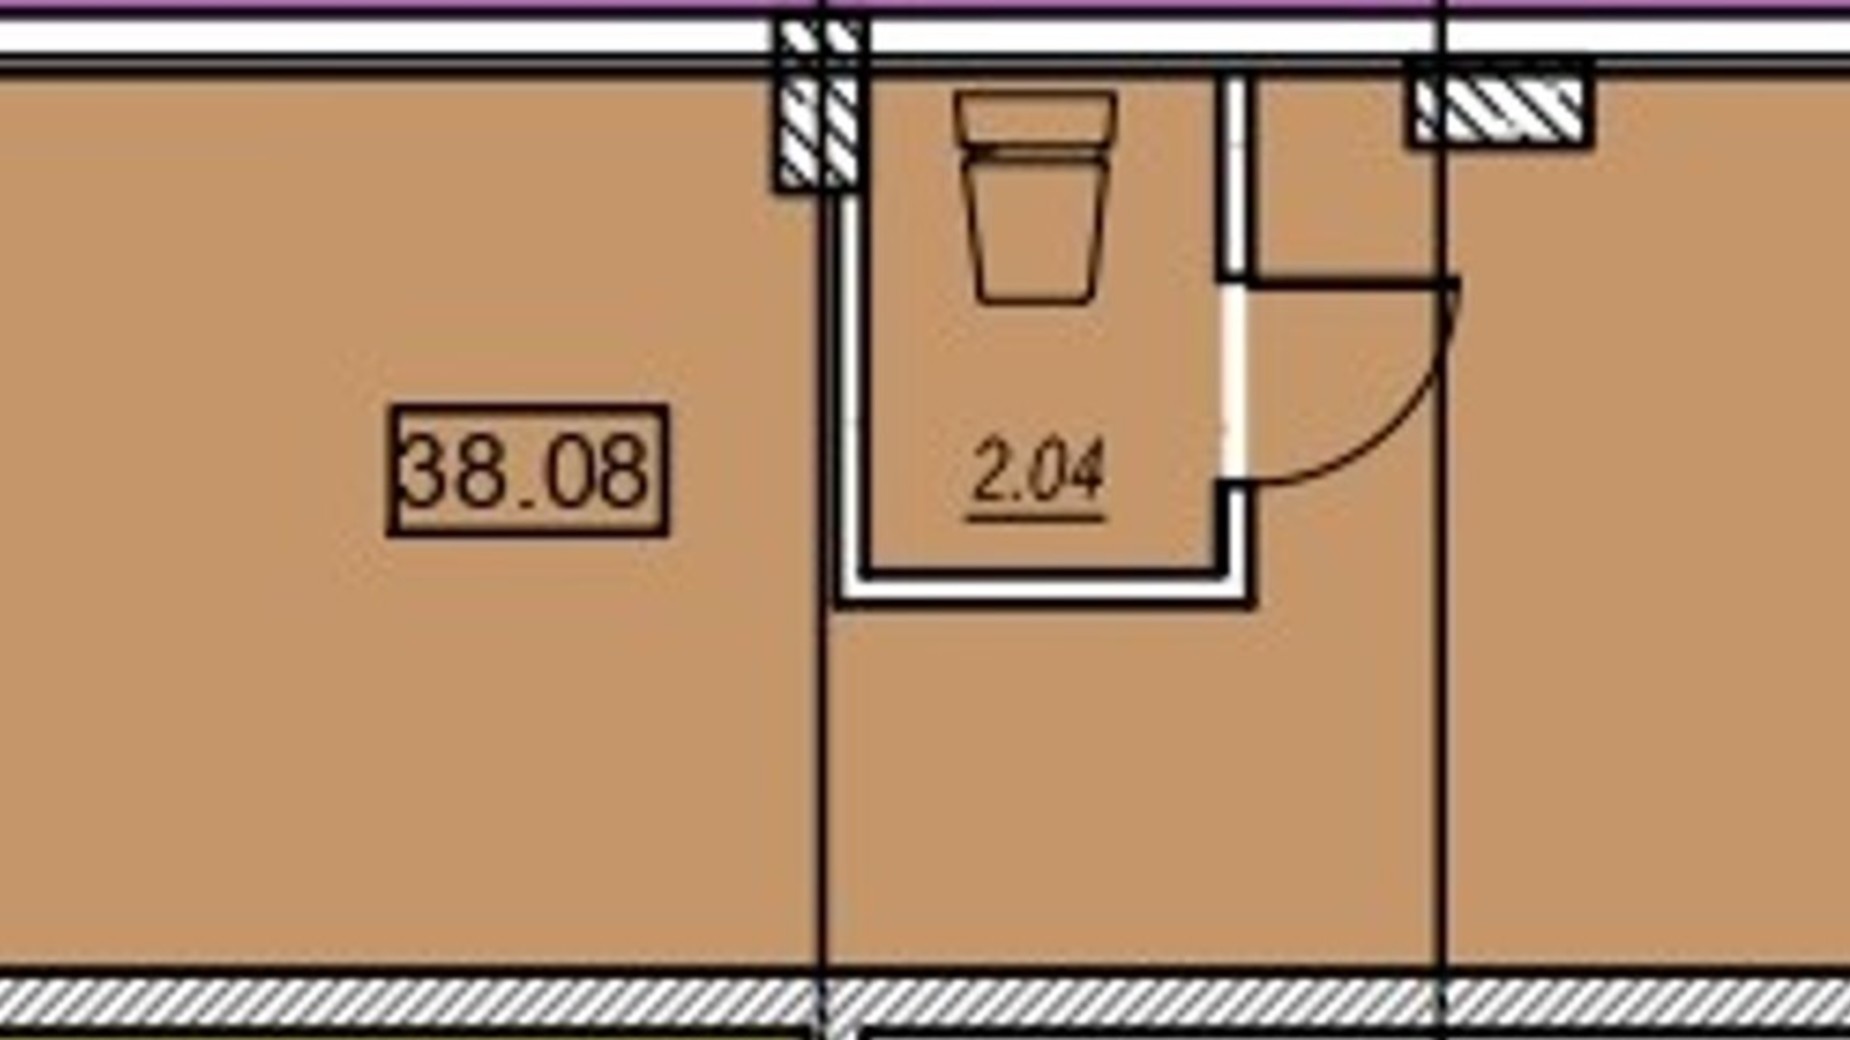 Планировка помещения в ЖК Меридиан 38 м², фото 487759